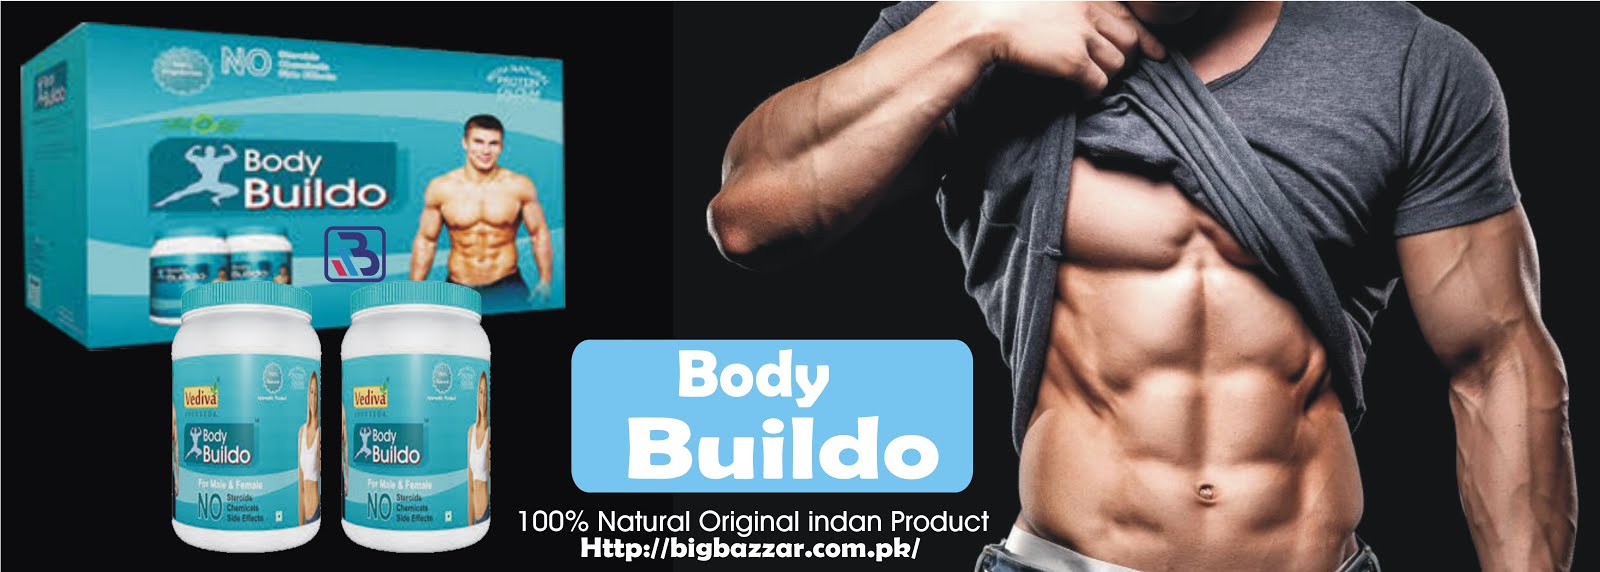 Body + Muscle Powder - Body Buildo Powder in Pakistan | BigBazzar Pakistan